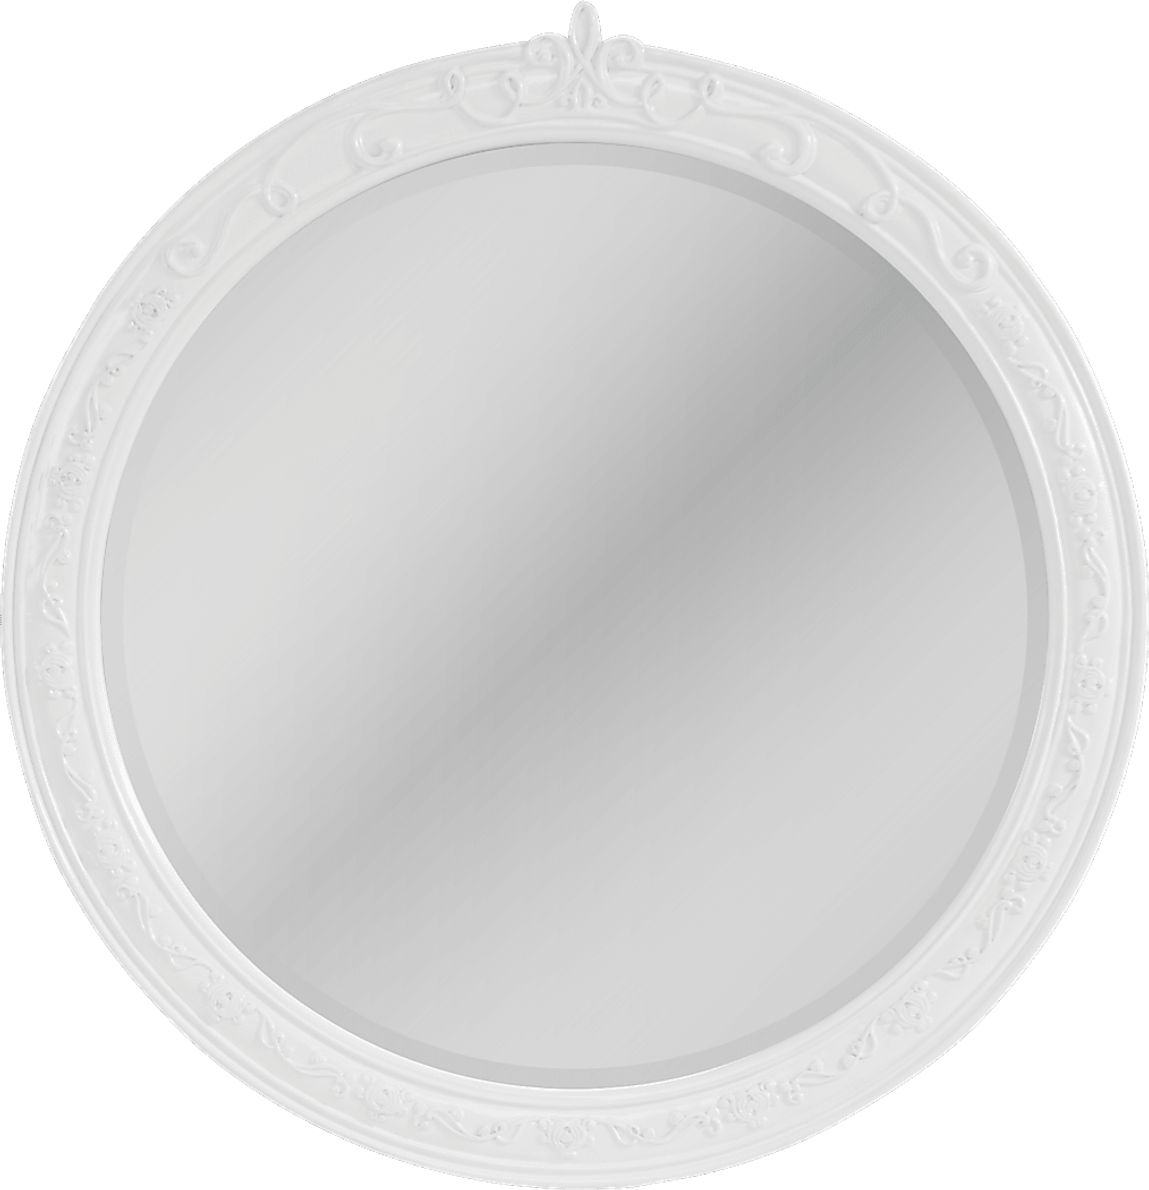 Disney Princess Dreamer White Round Mirror